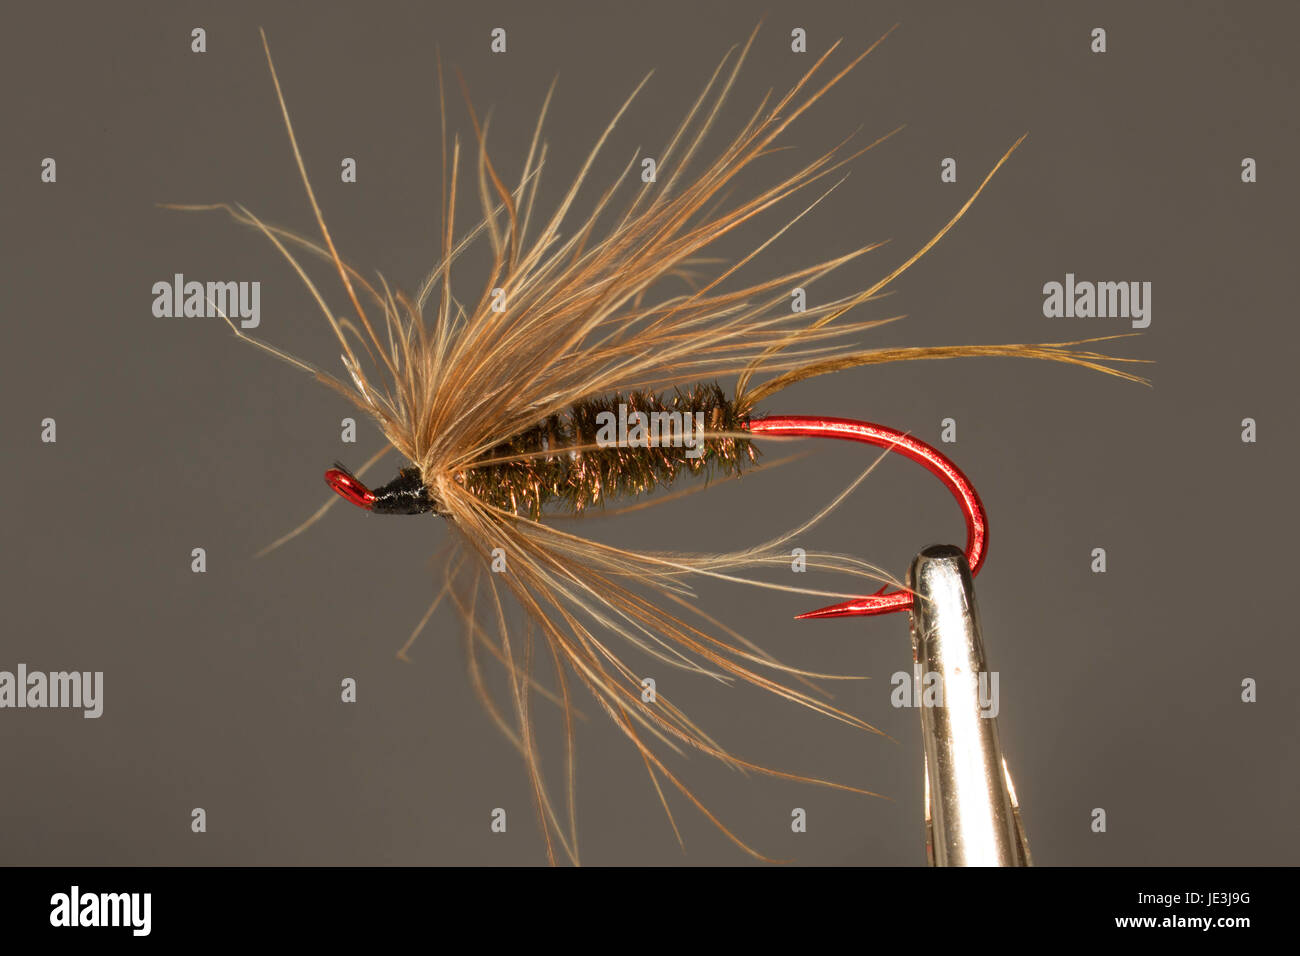 Streamer fly fishing immagini e fotografie stock ad alta risoluzione - Alamy